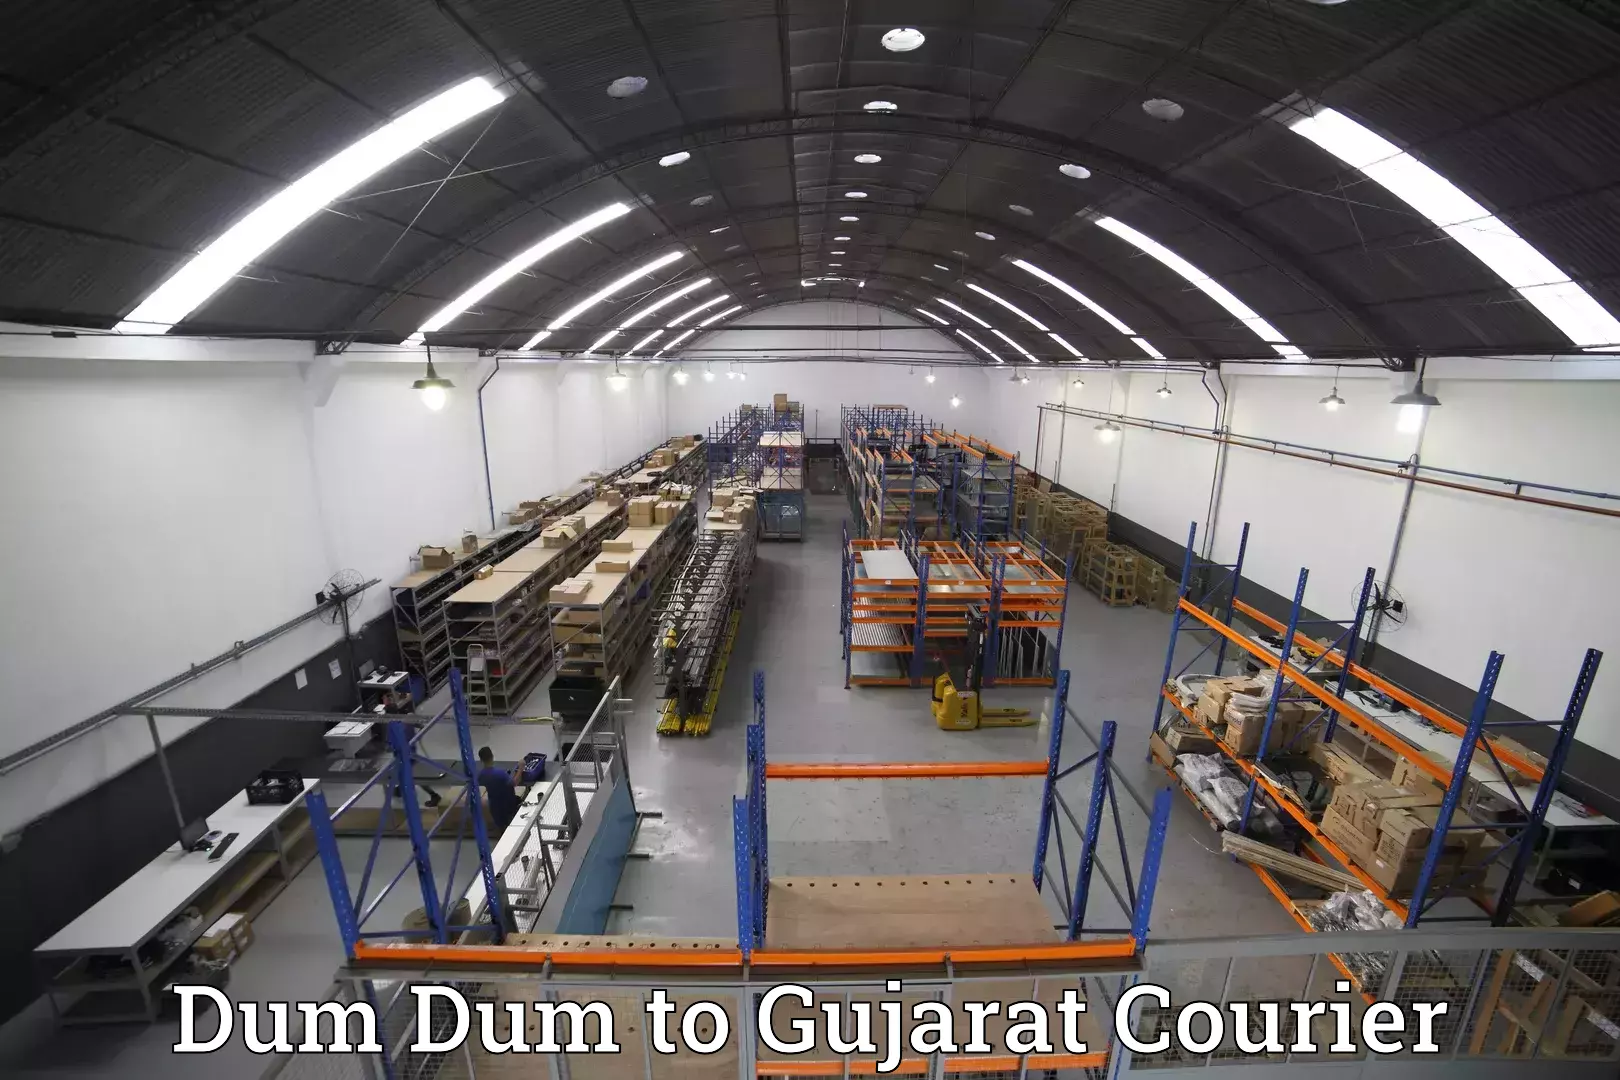 Luggage transport consultancy Dum Dum to Gujarat